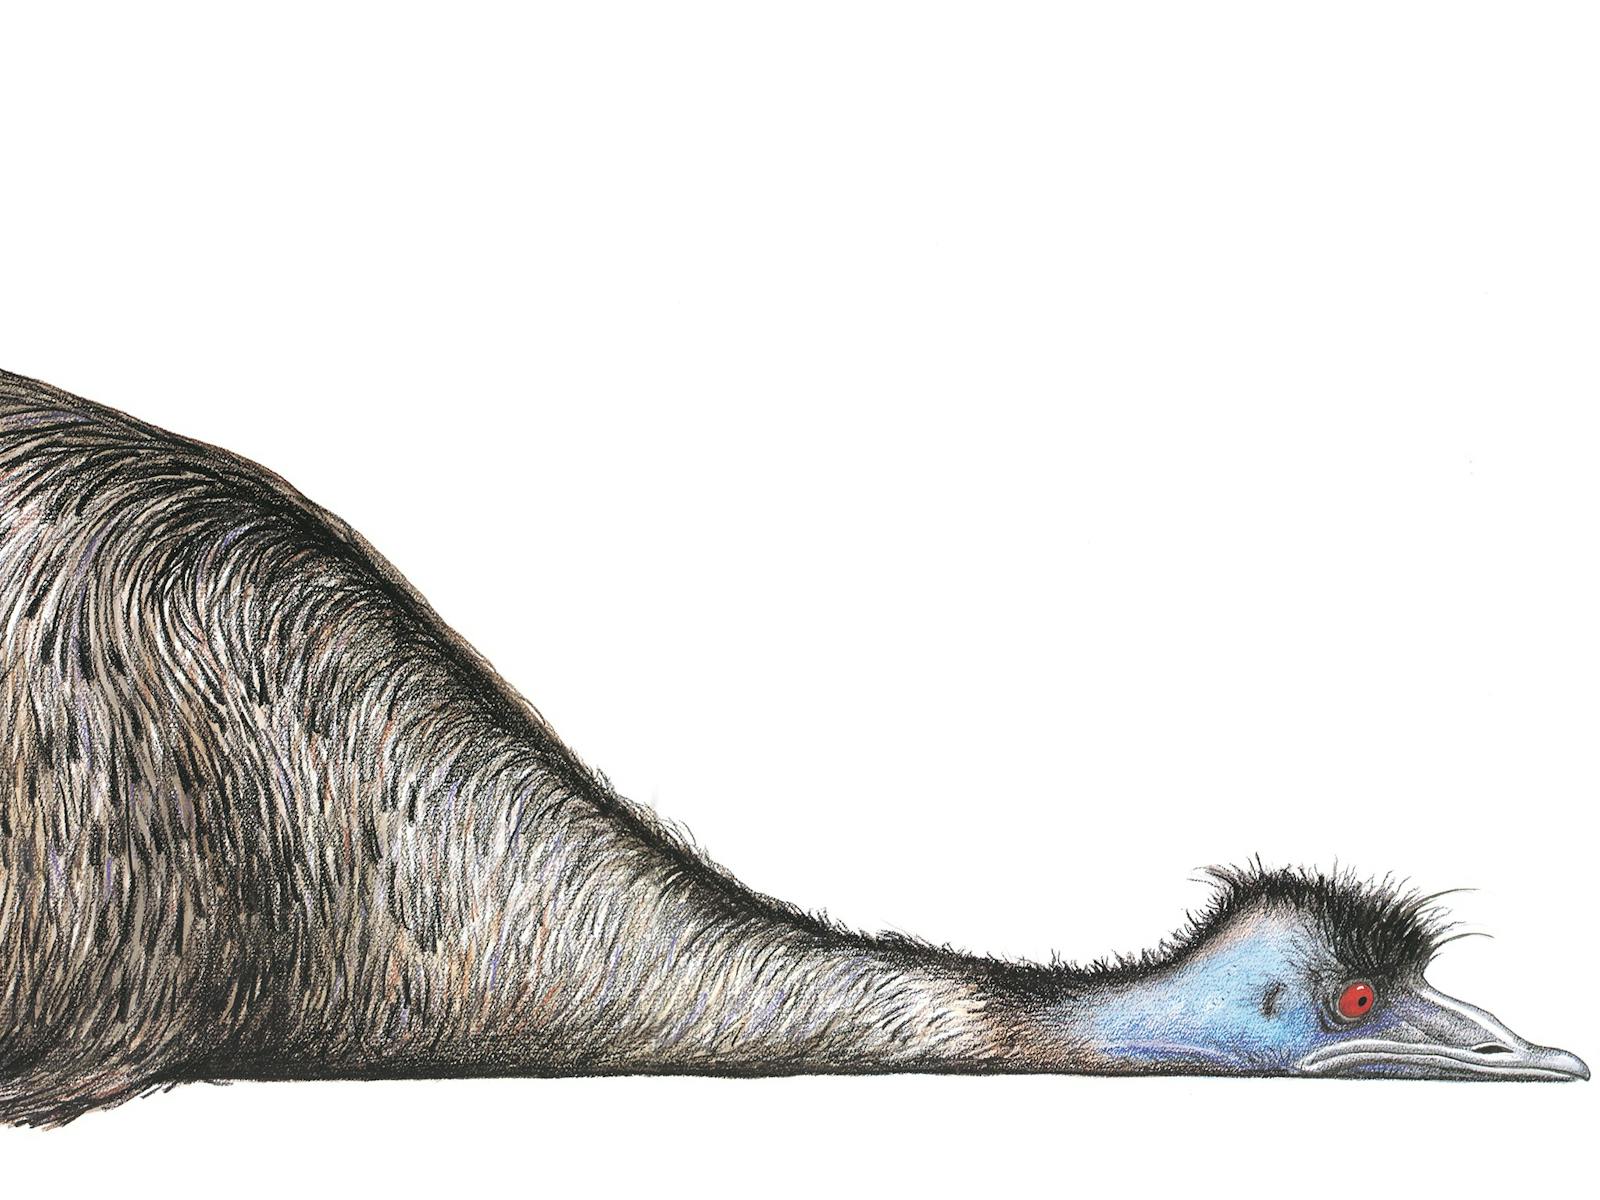 Image for Edward the Emu